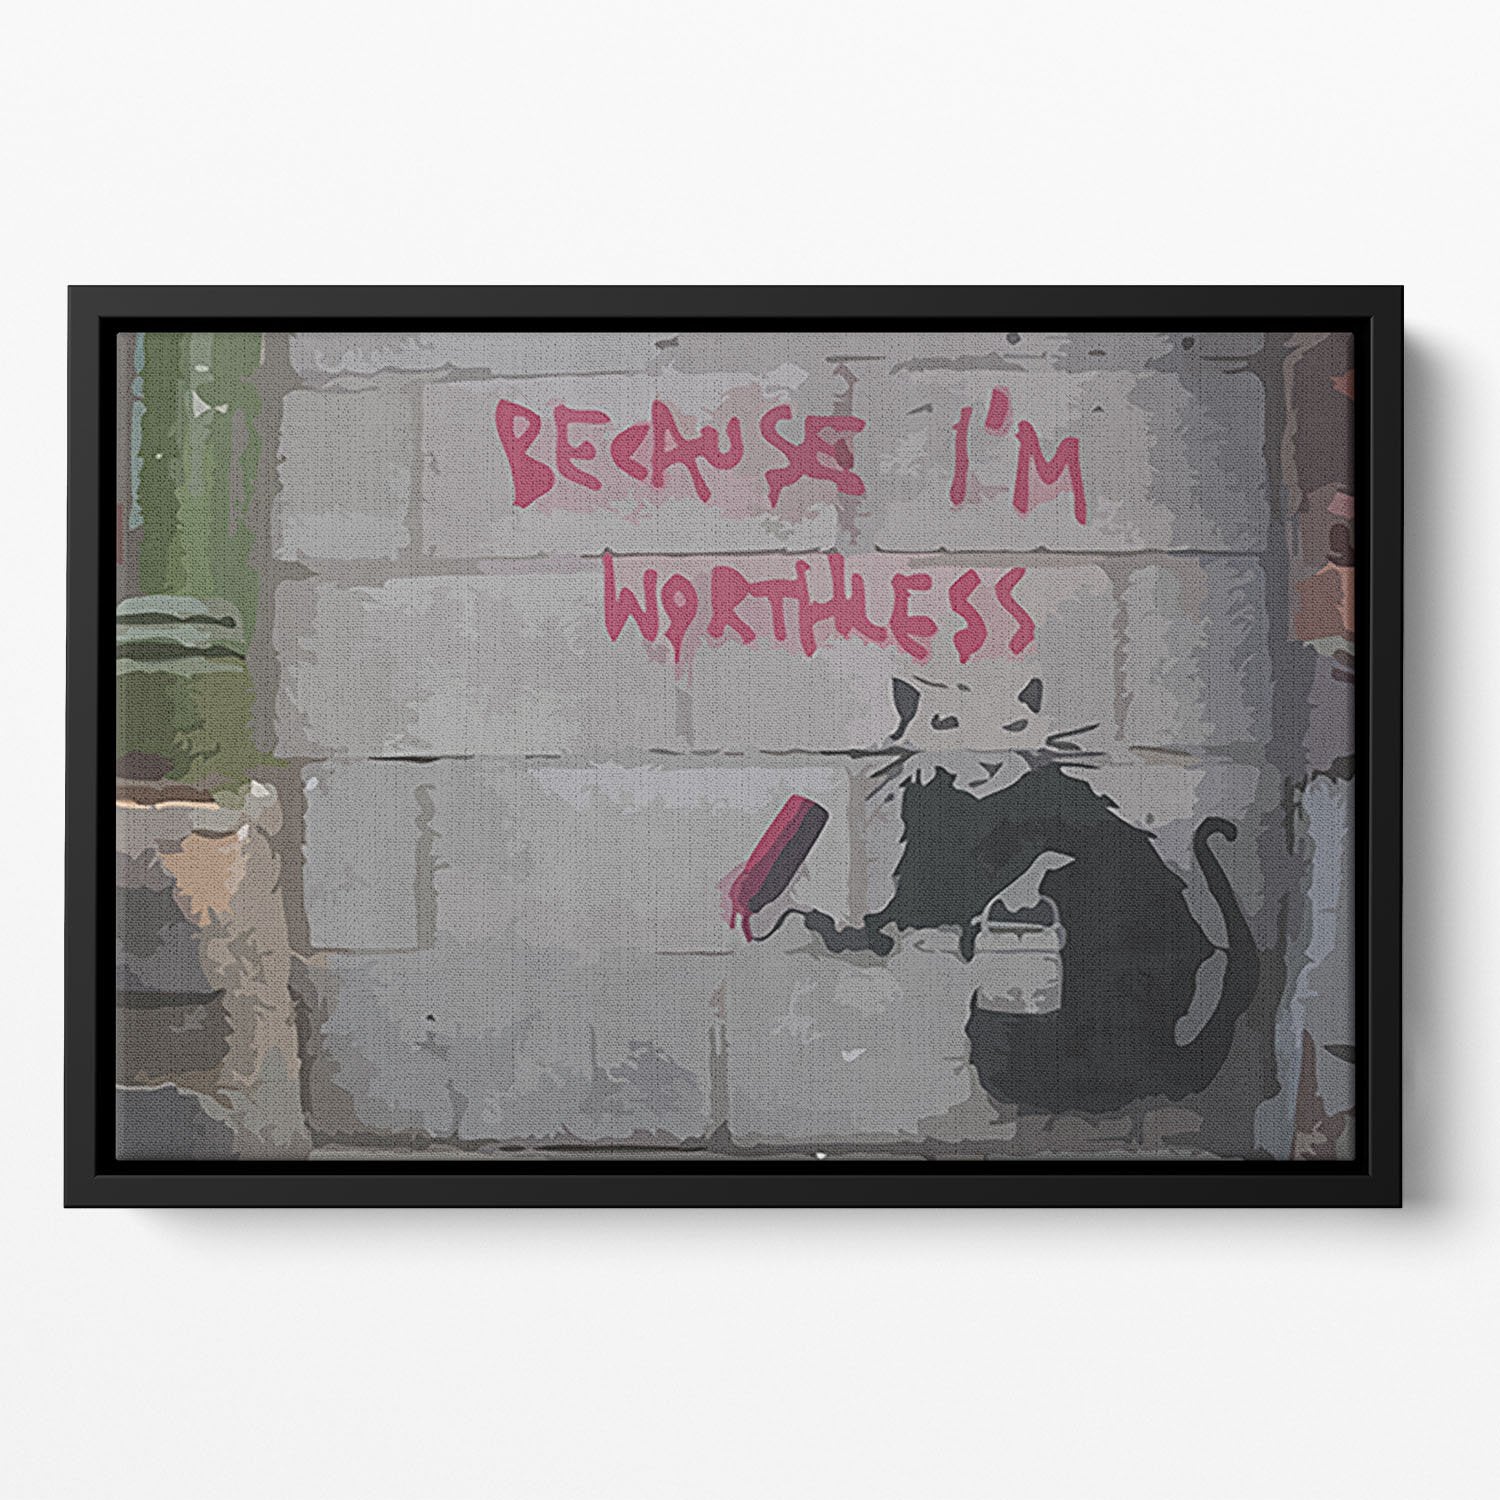 Banksy Worthless Rat Floating Framed Canvas